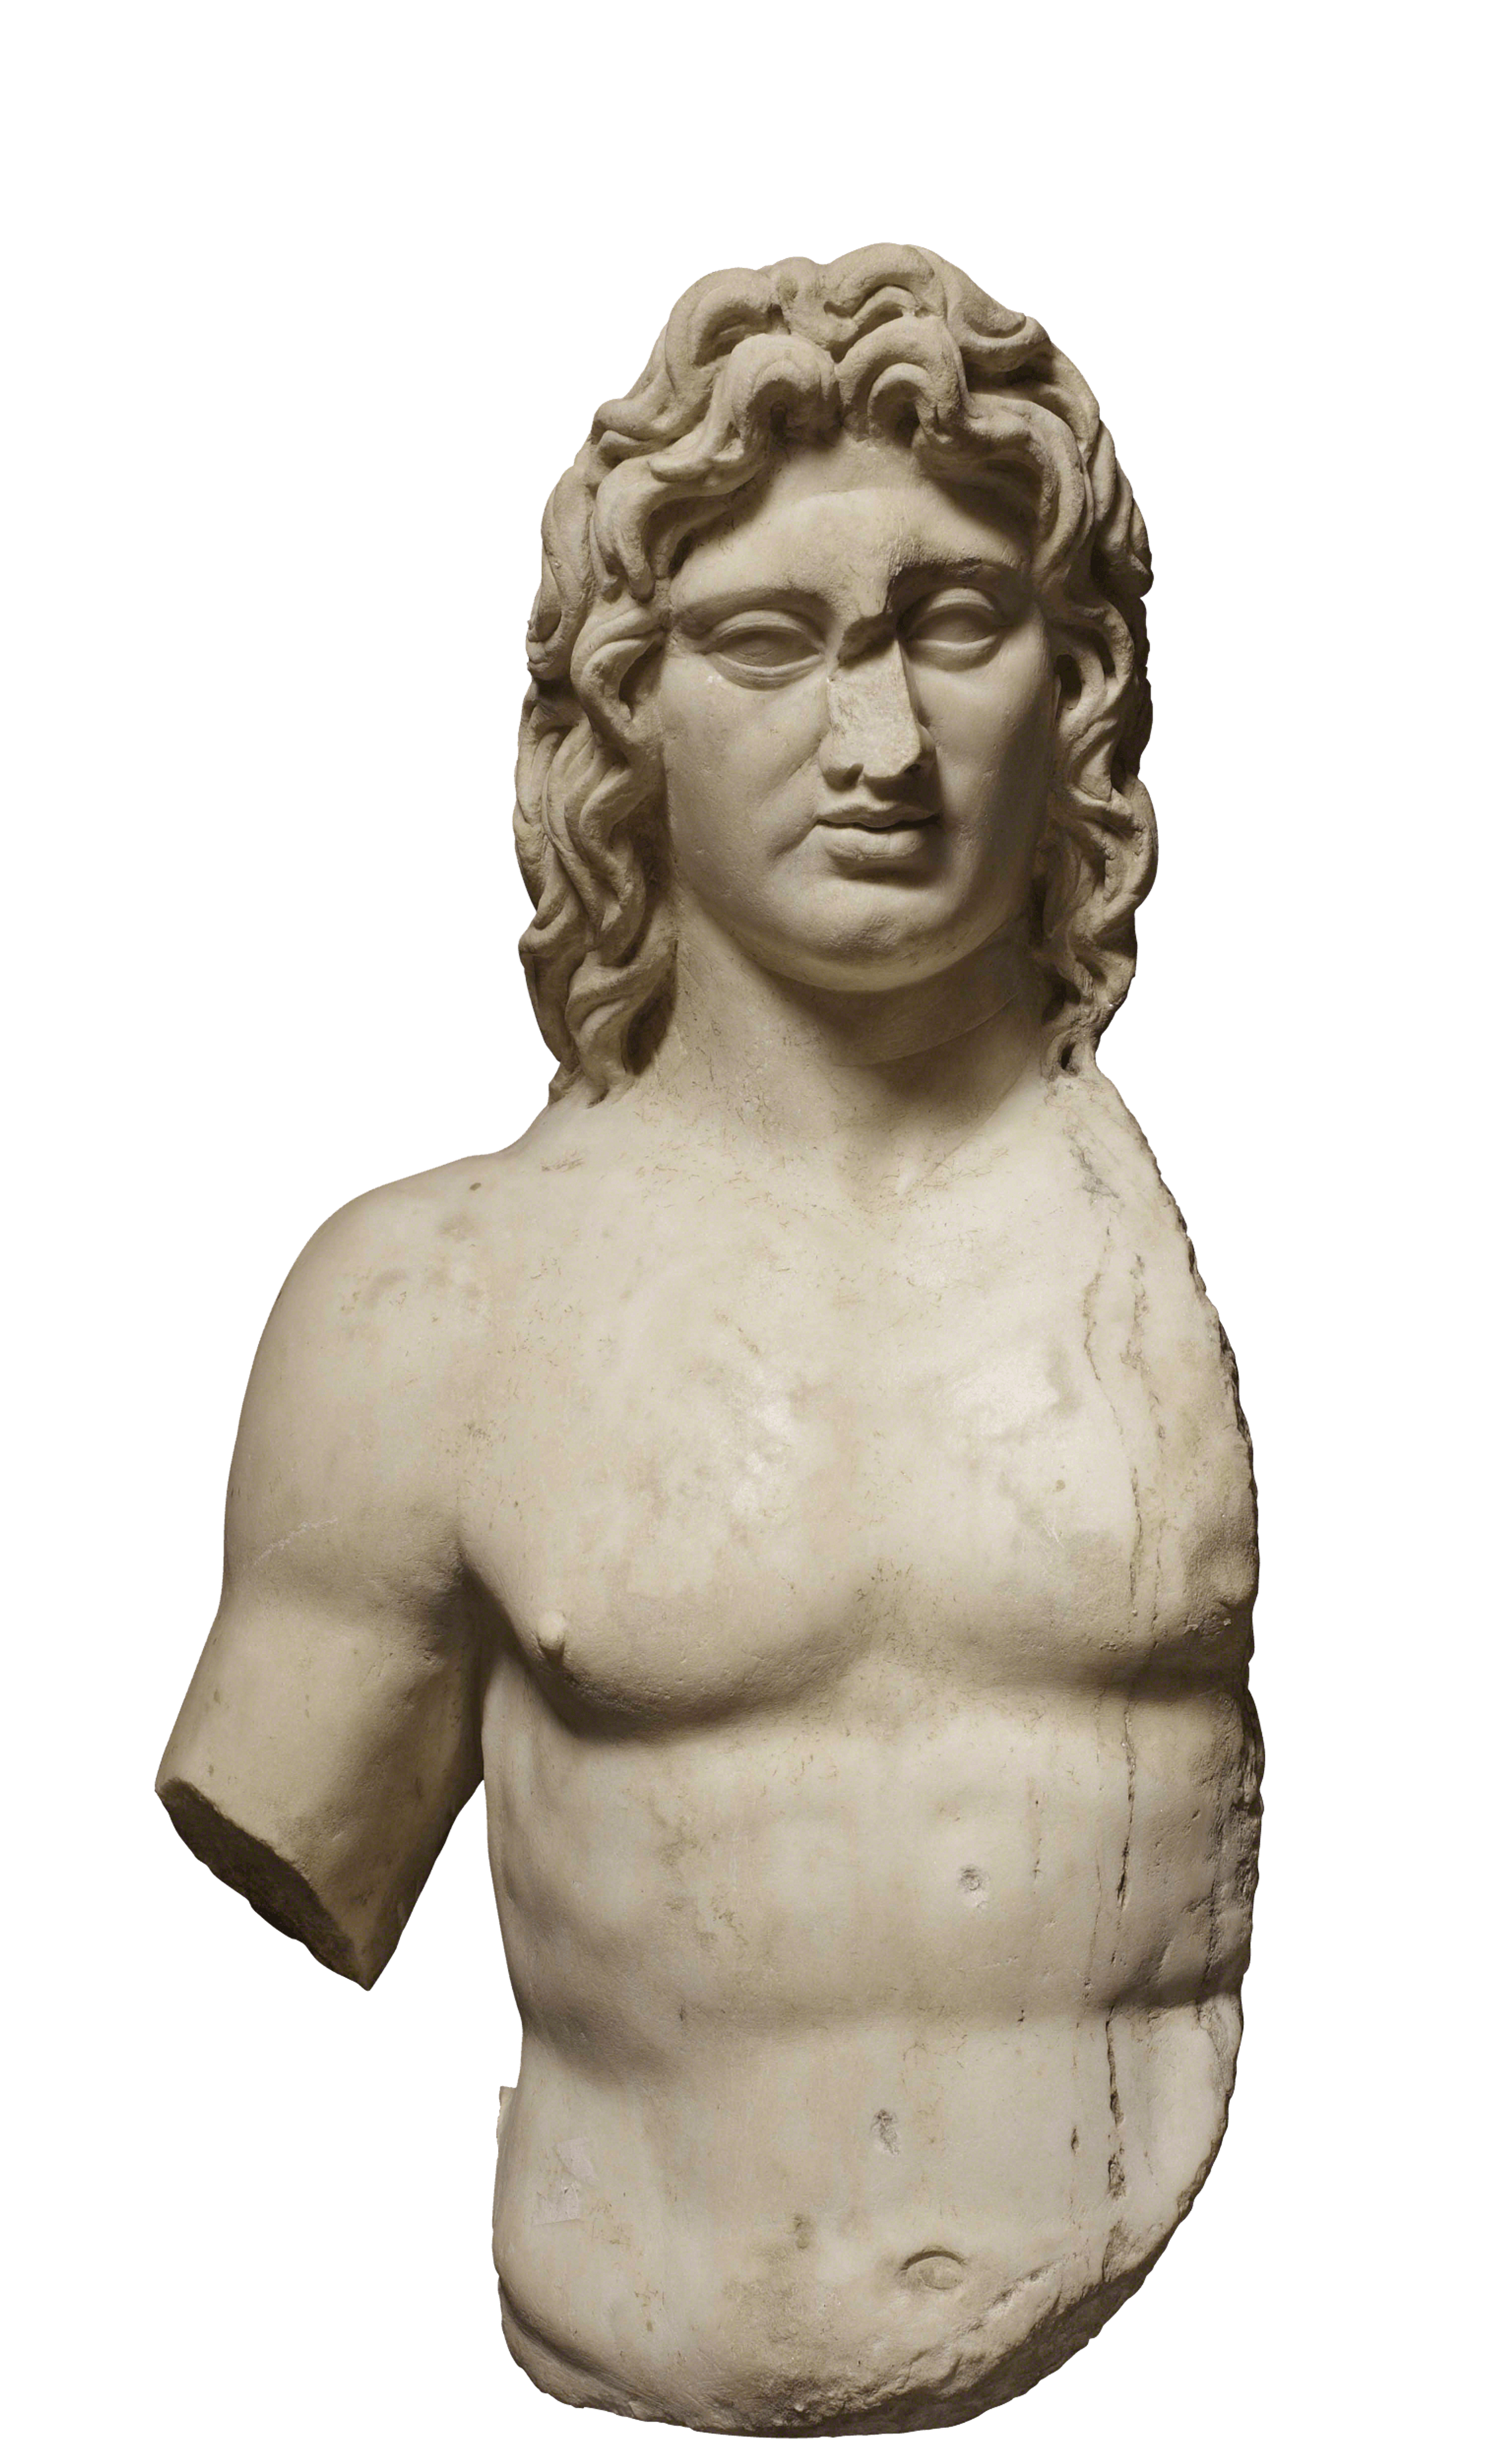 Busto di Alessandro Magno